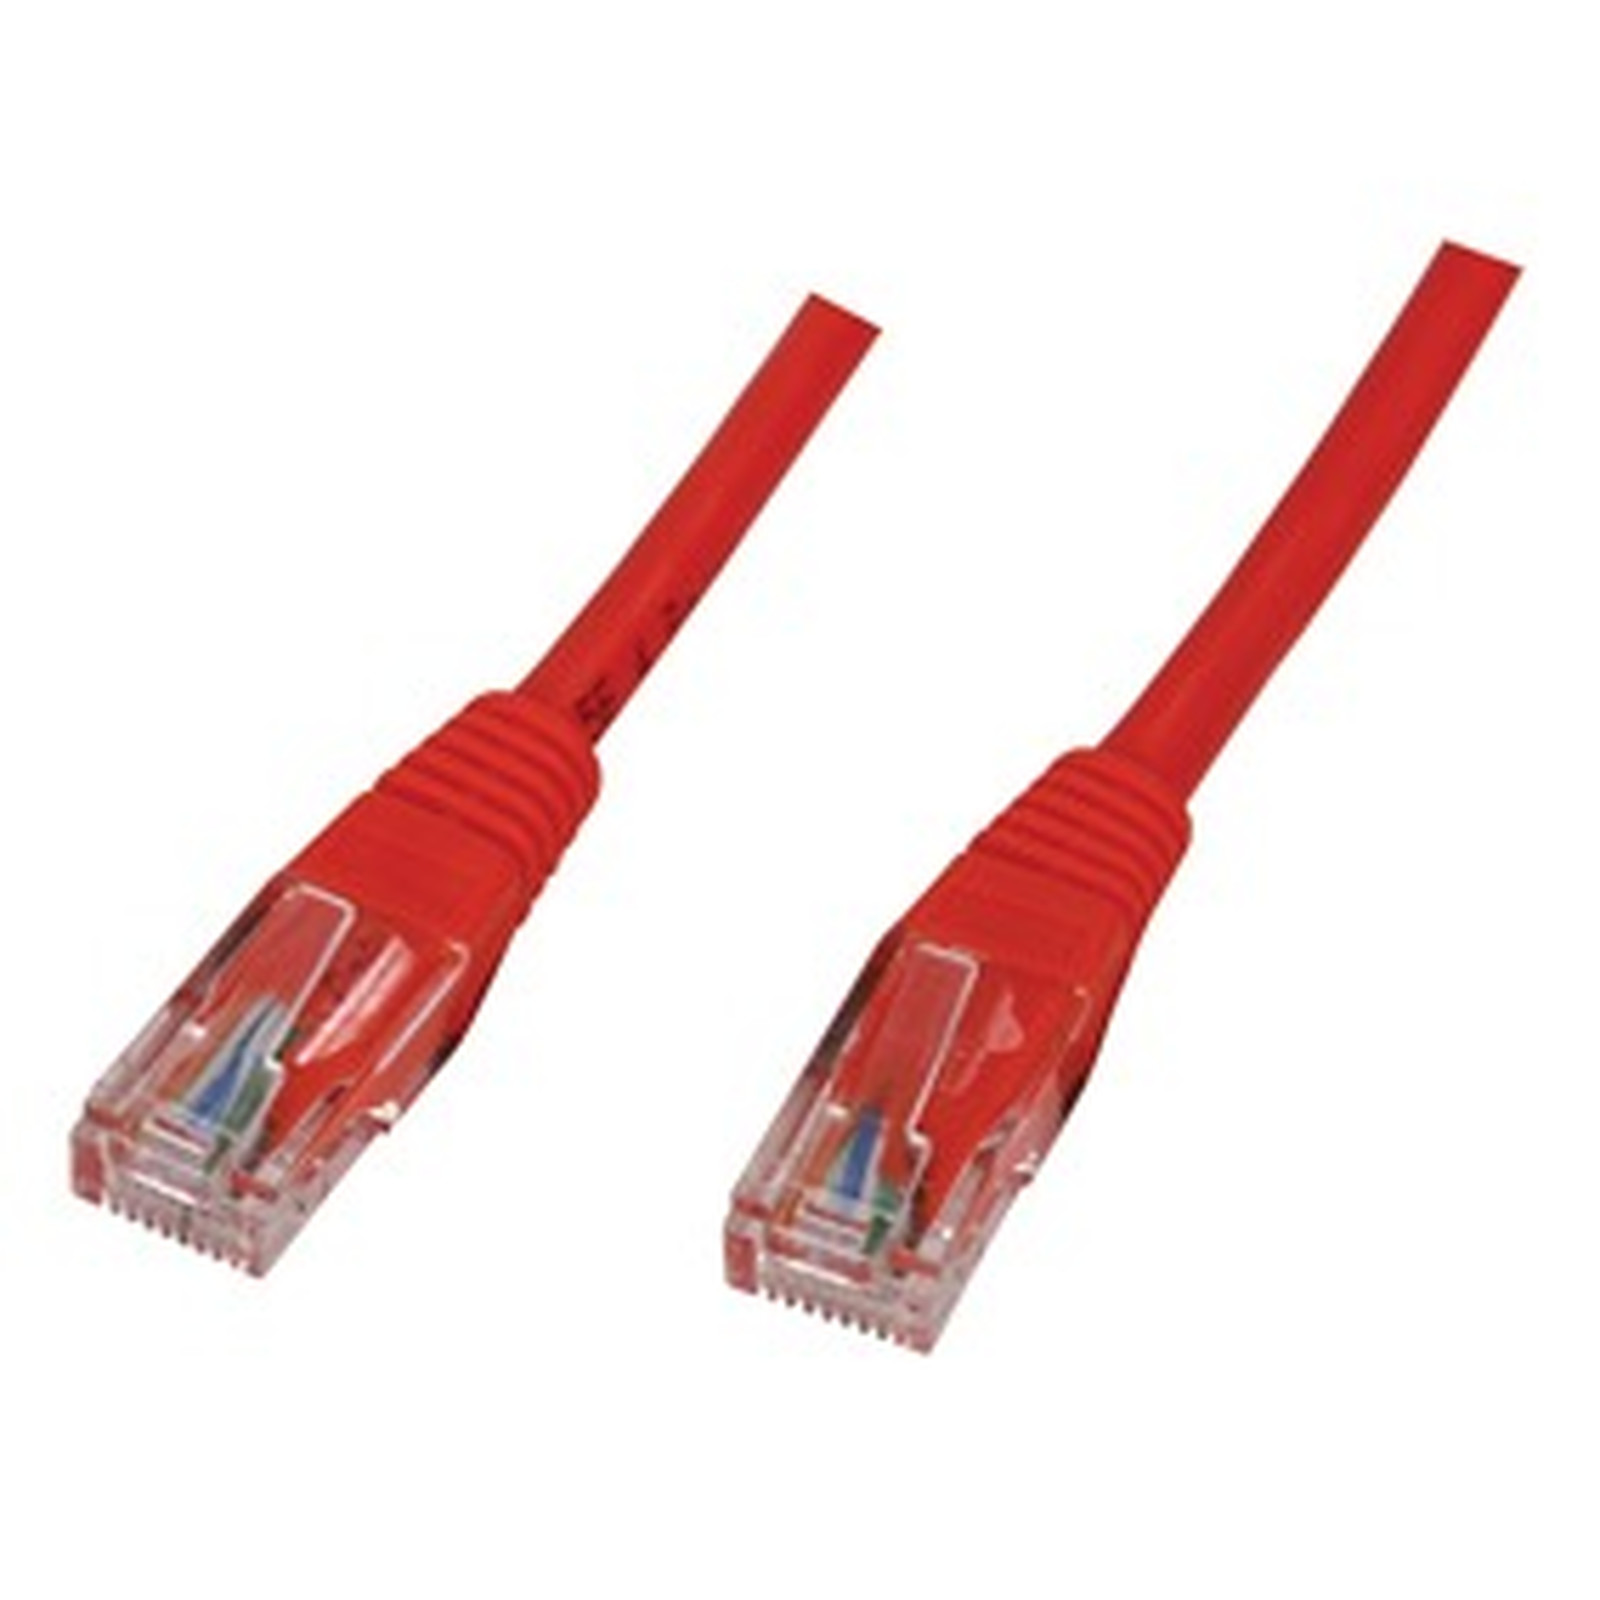 Cable RJ45 categorie 5e U/UTP 0.5 m (Rouge) - Cable RJ45 Generique